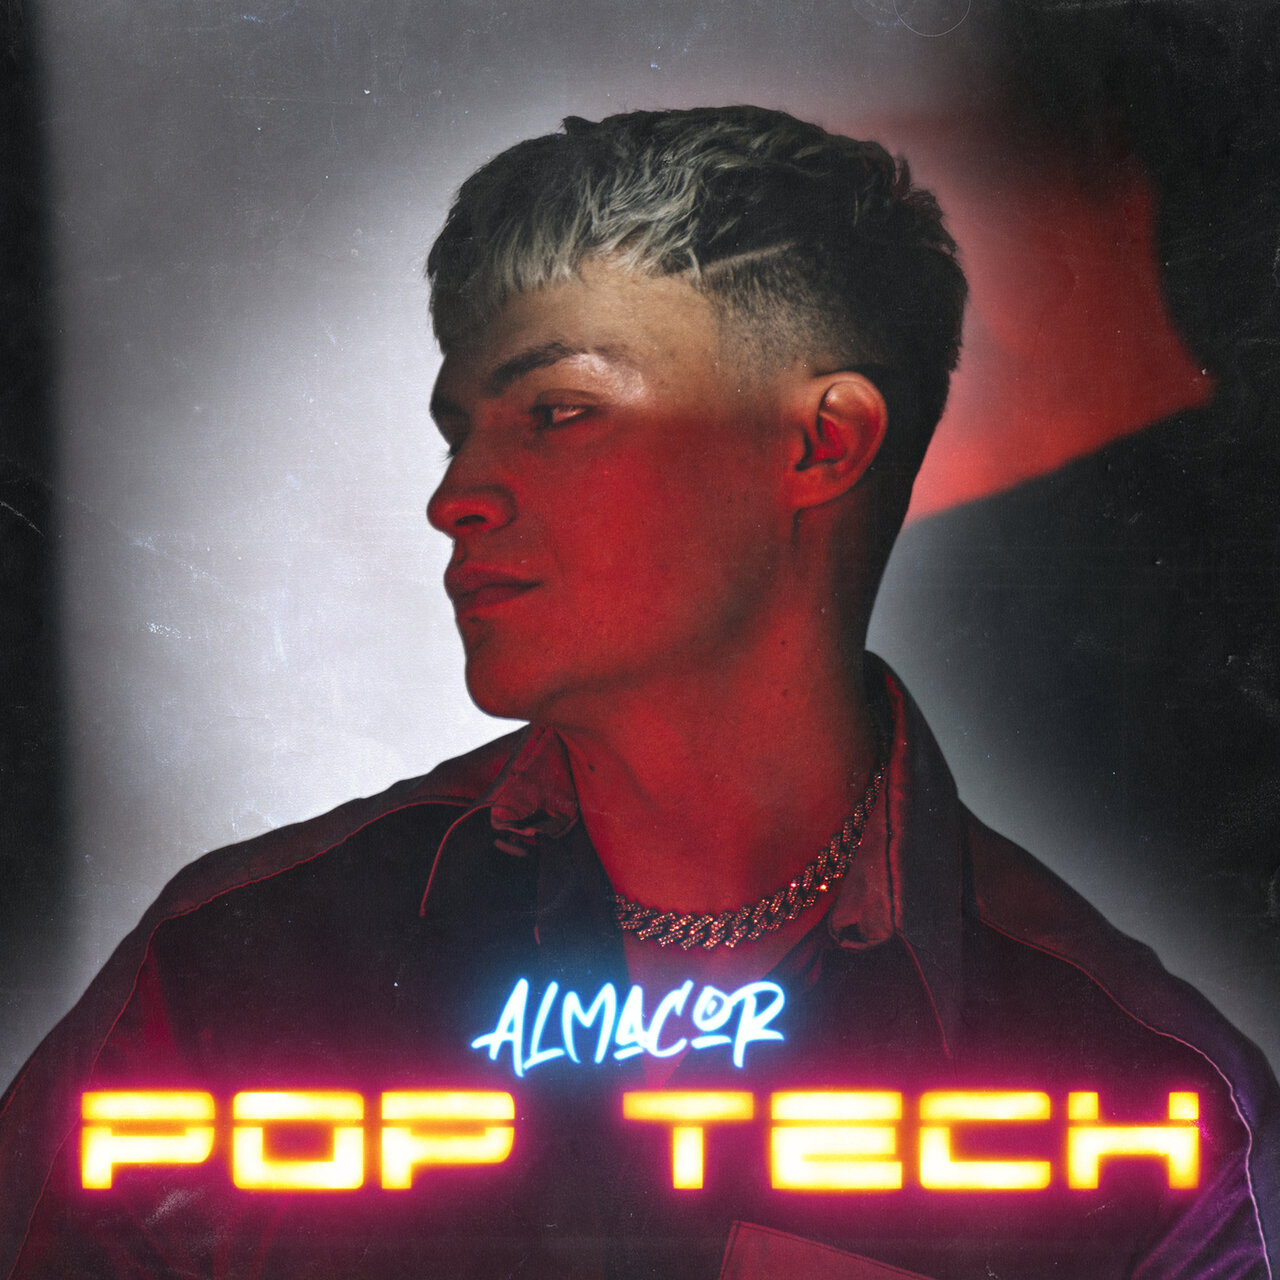 Almacor Pop Tech cover artwork